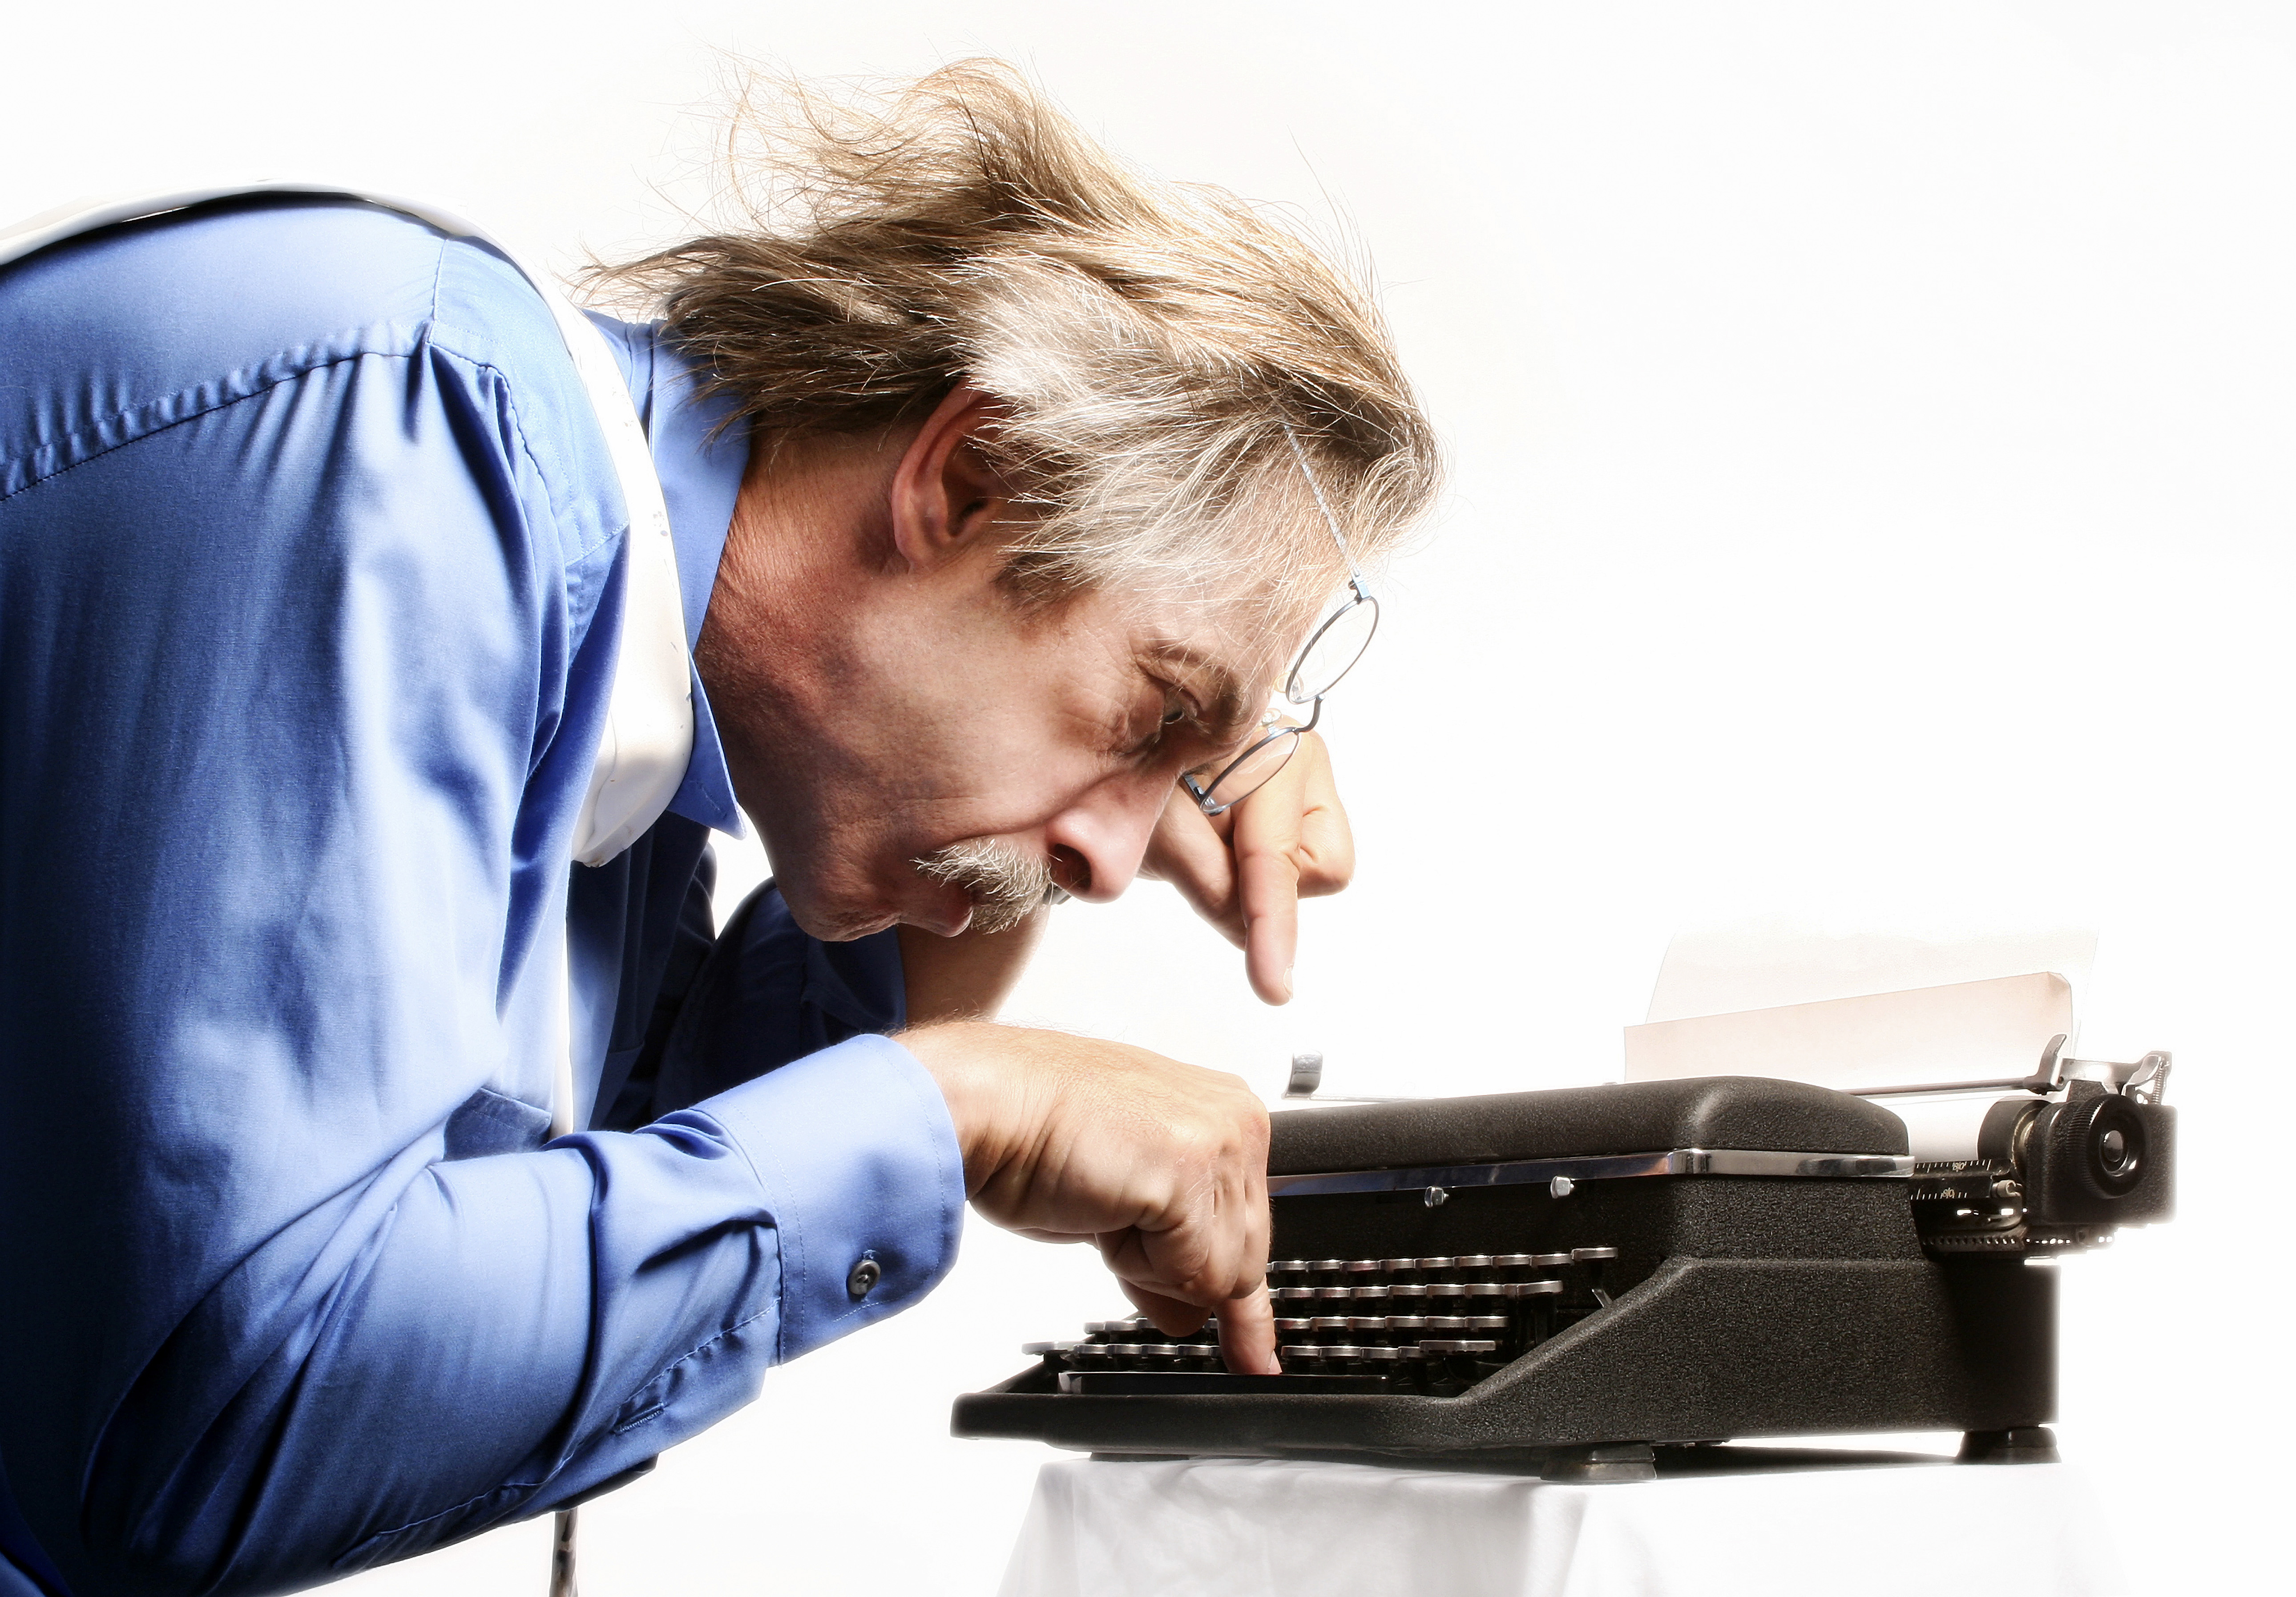 man using typewriter